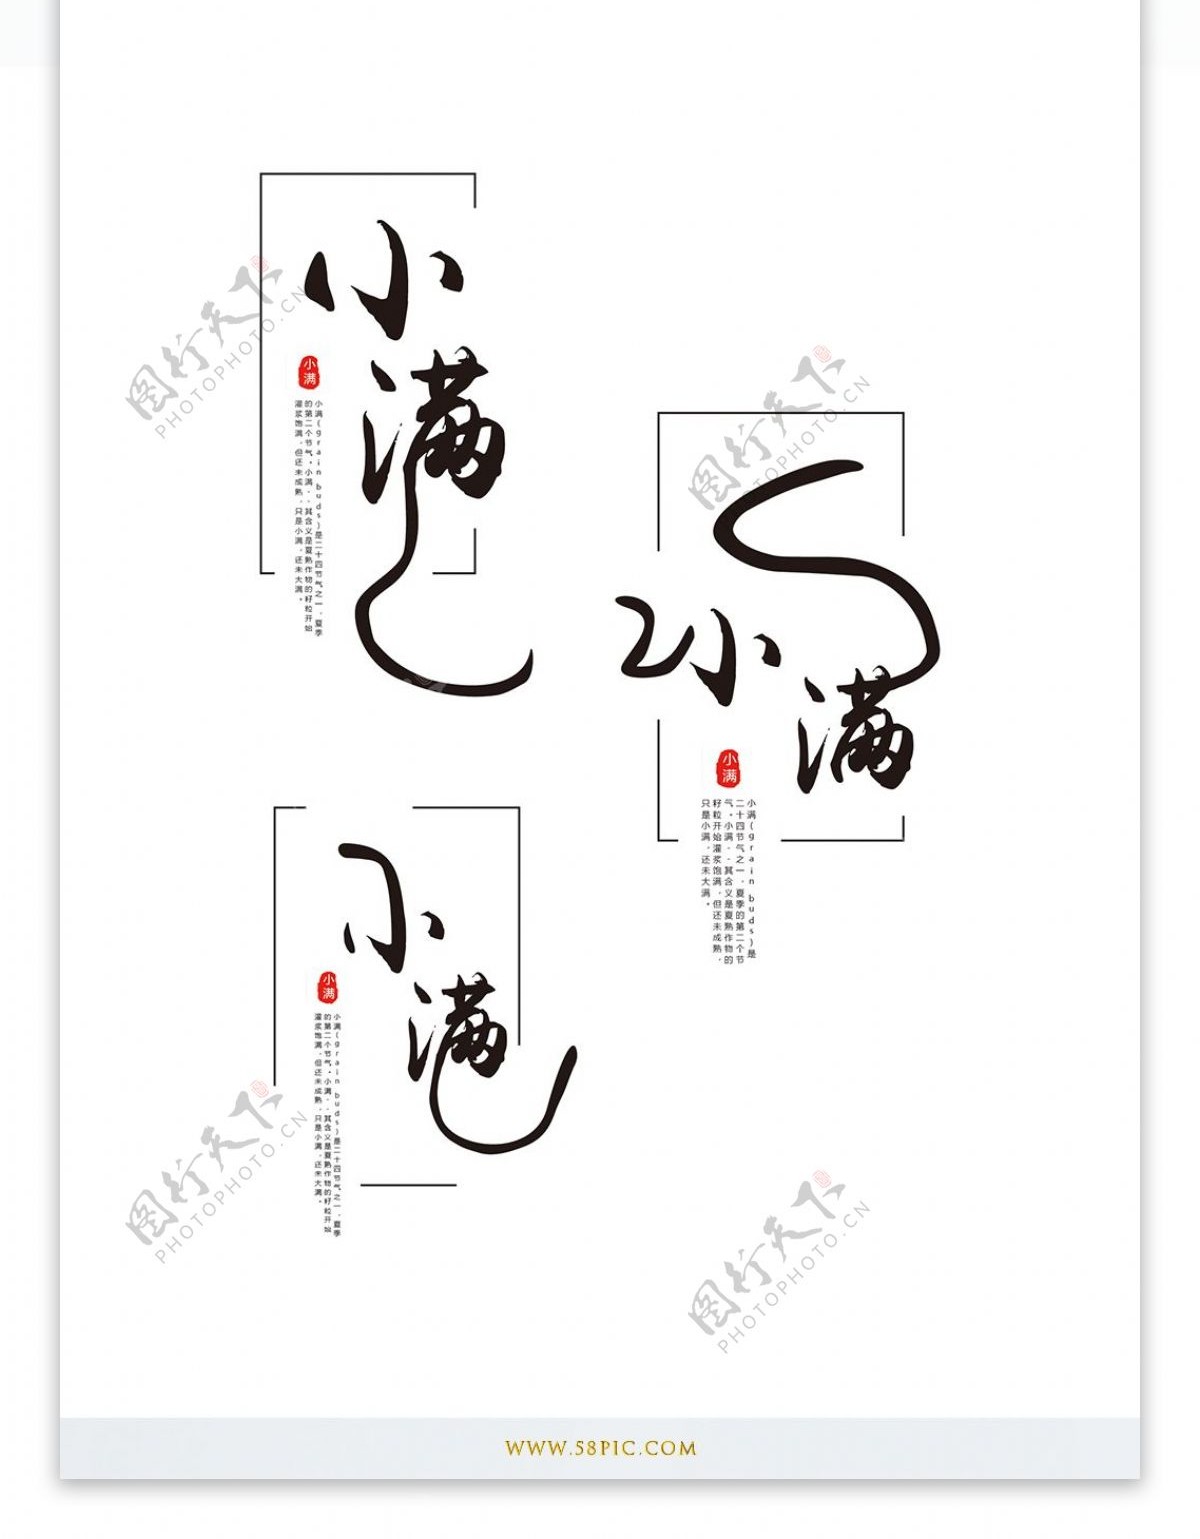 原创中国风小满艺术字体设计